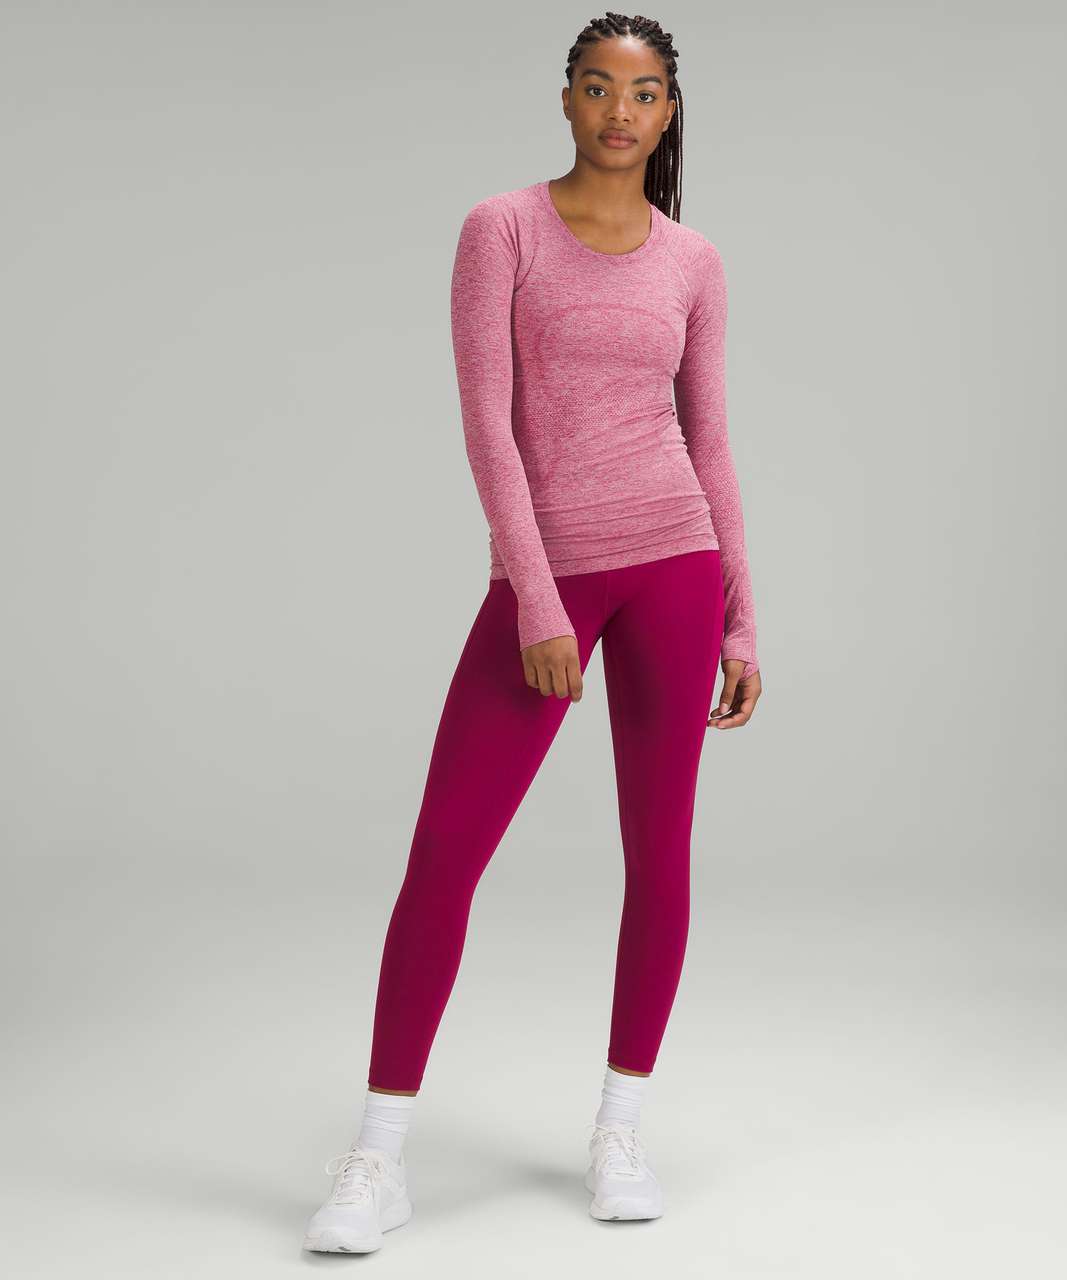 Lululemon Swiftly Tech Long Sleeve Shirt 2.0 - Pomegranate / Pink Peony